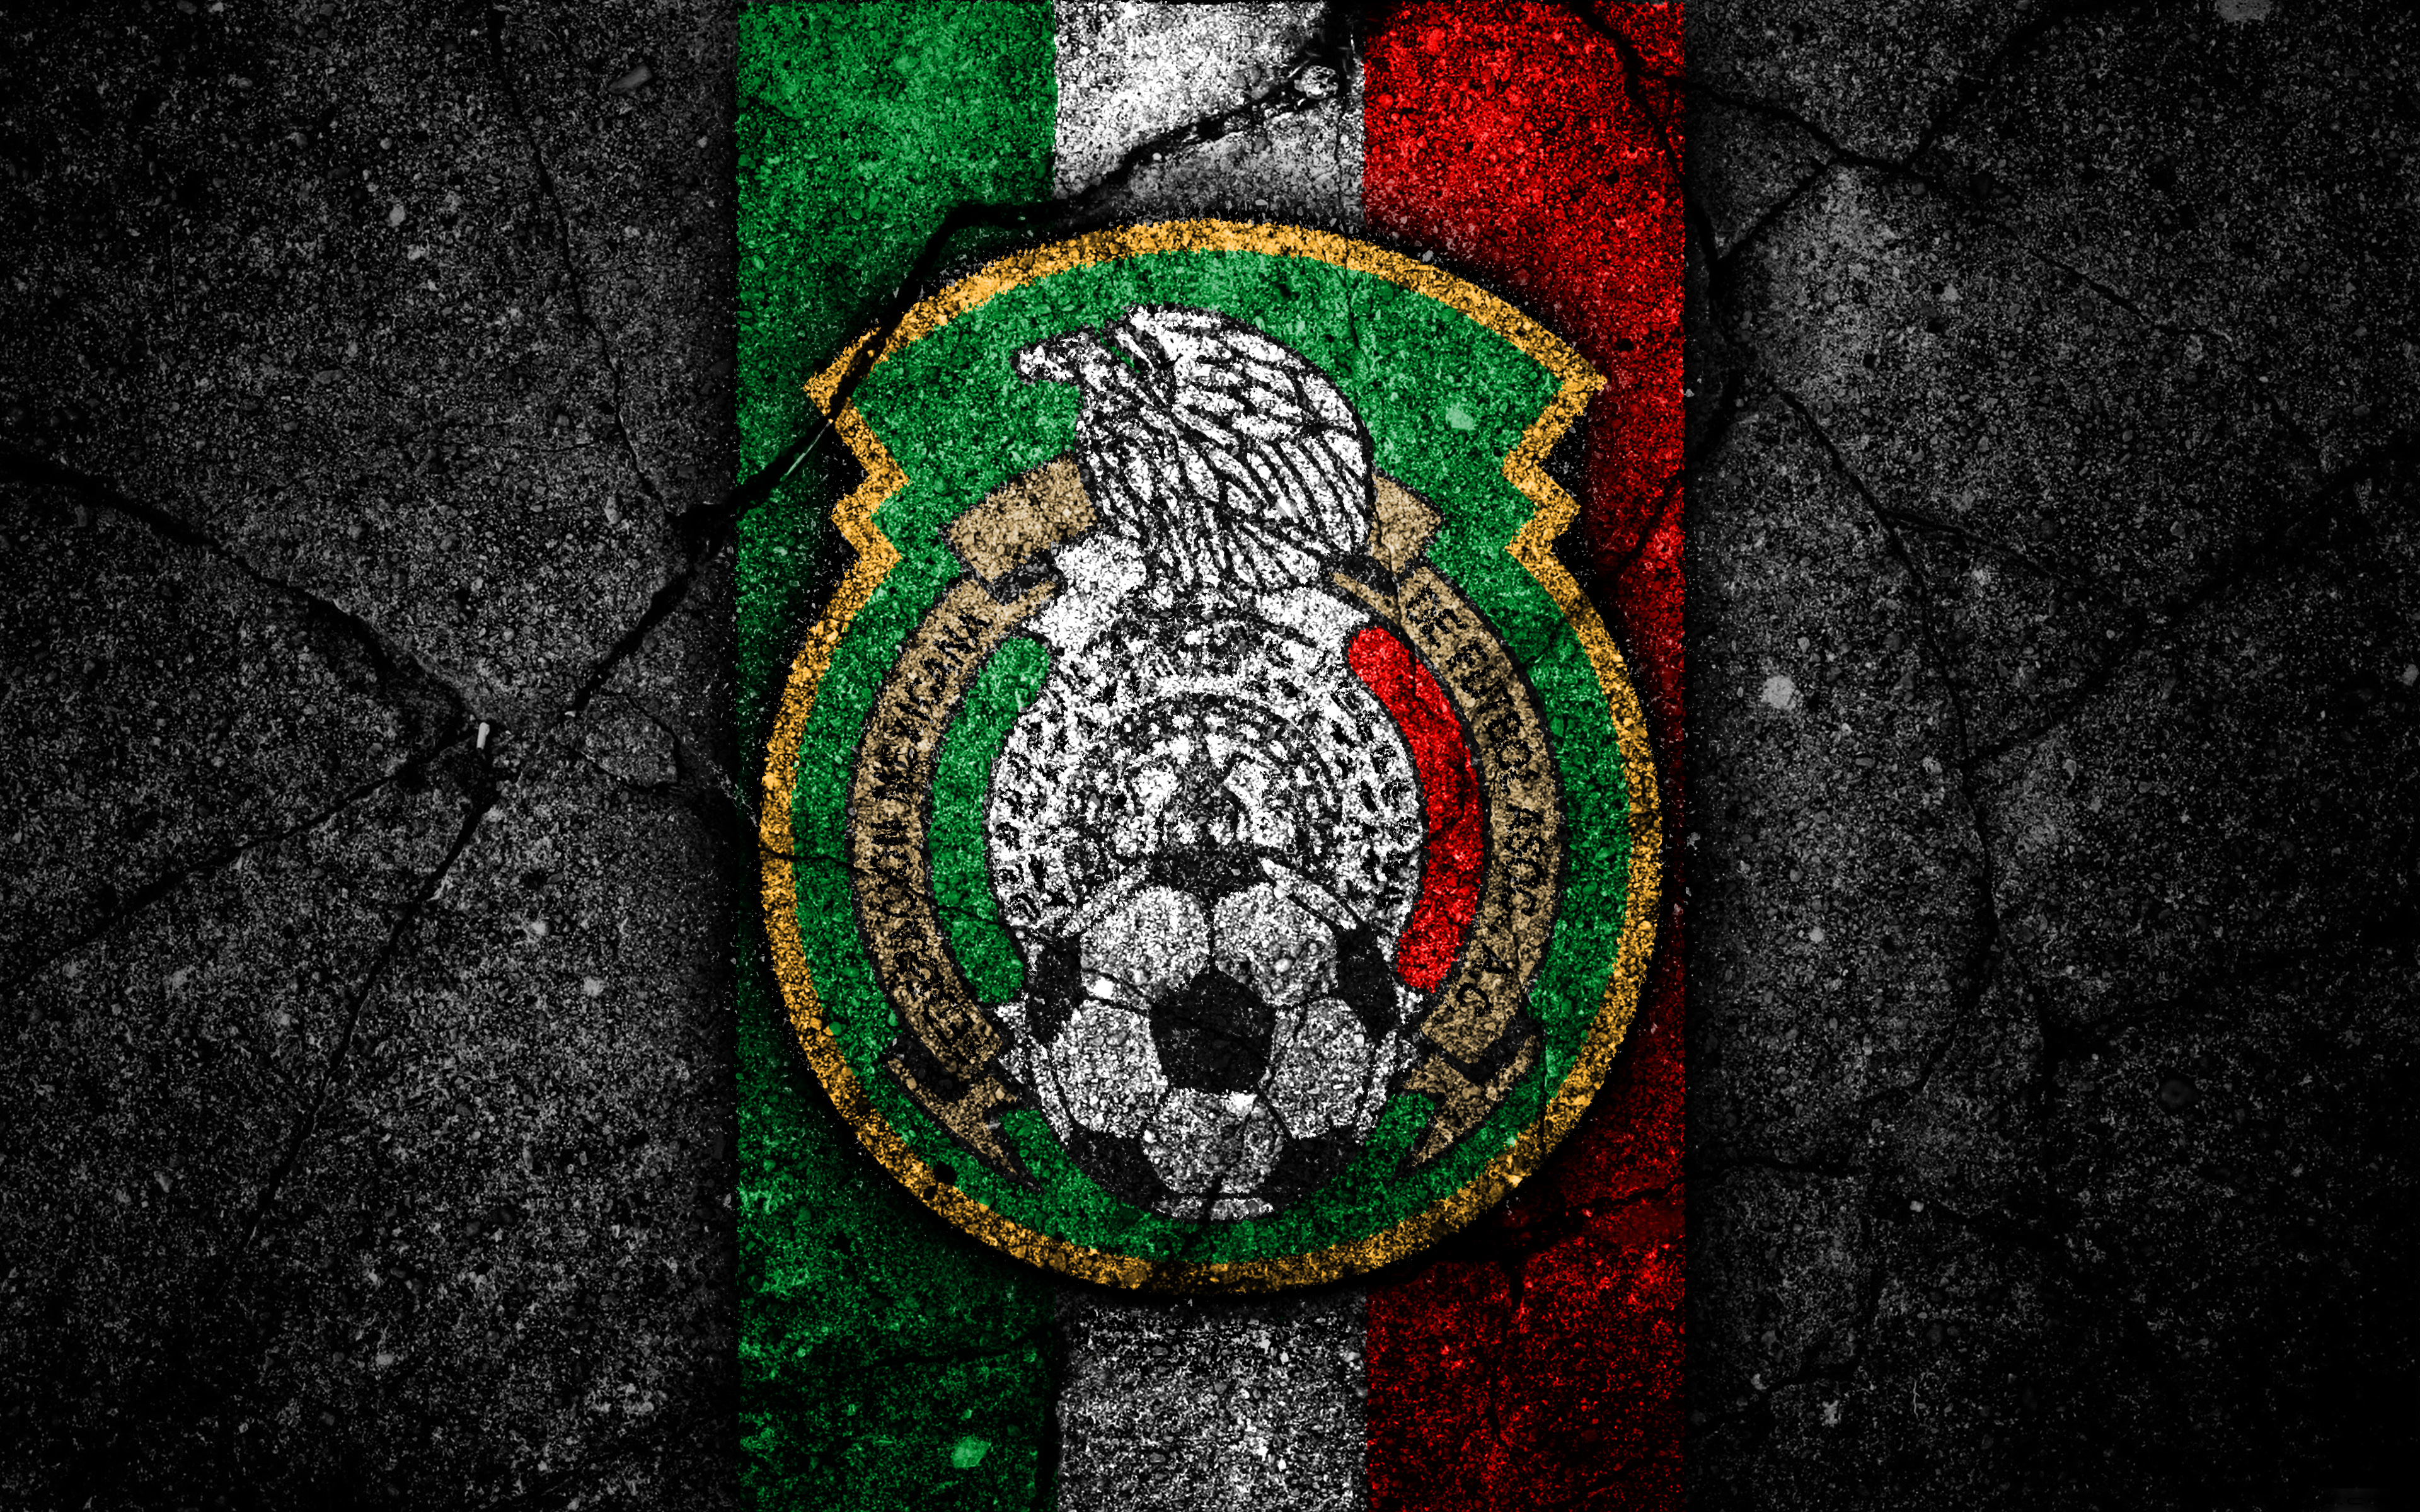 Скачать обои Сборная Мексики По Футболу на телефон бесплатно